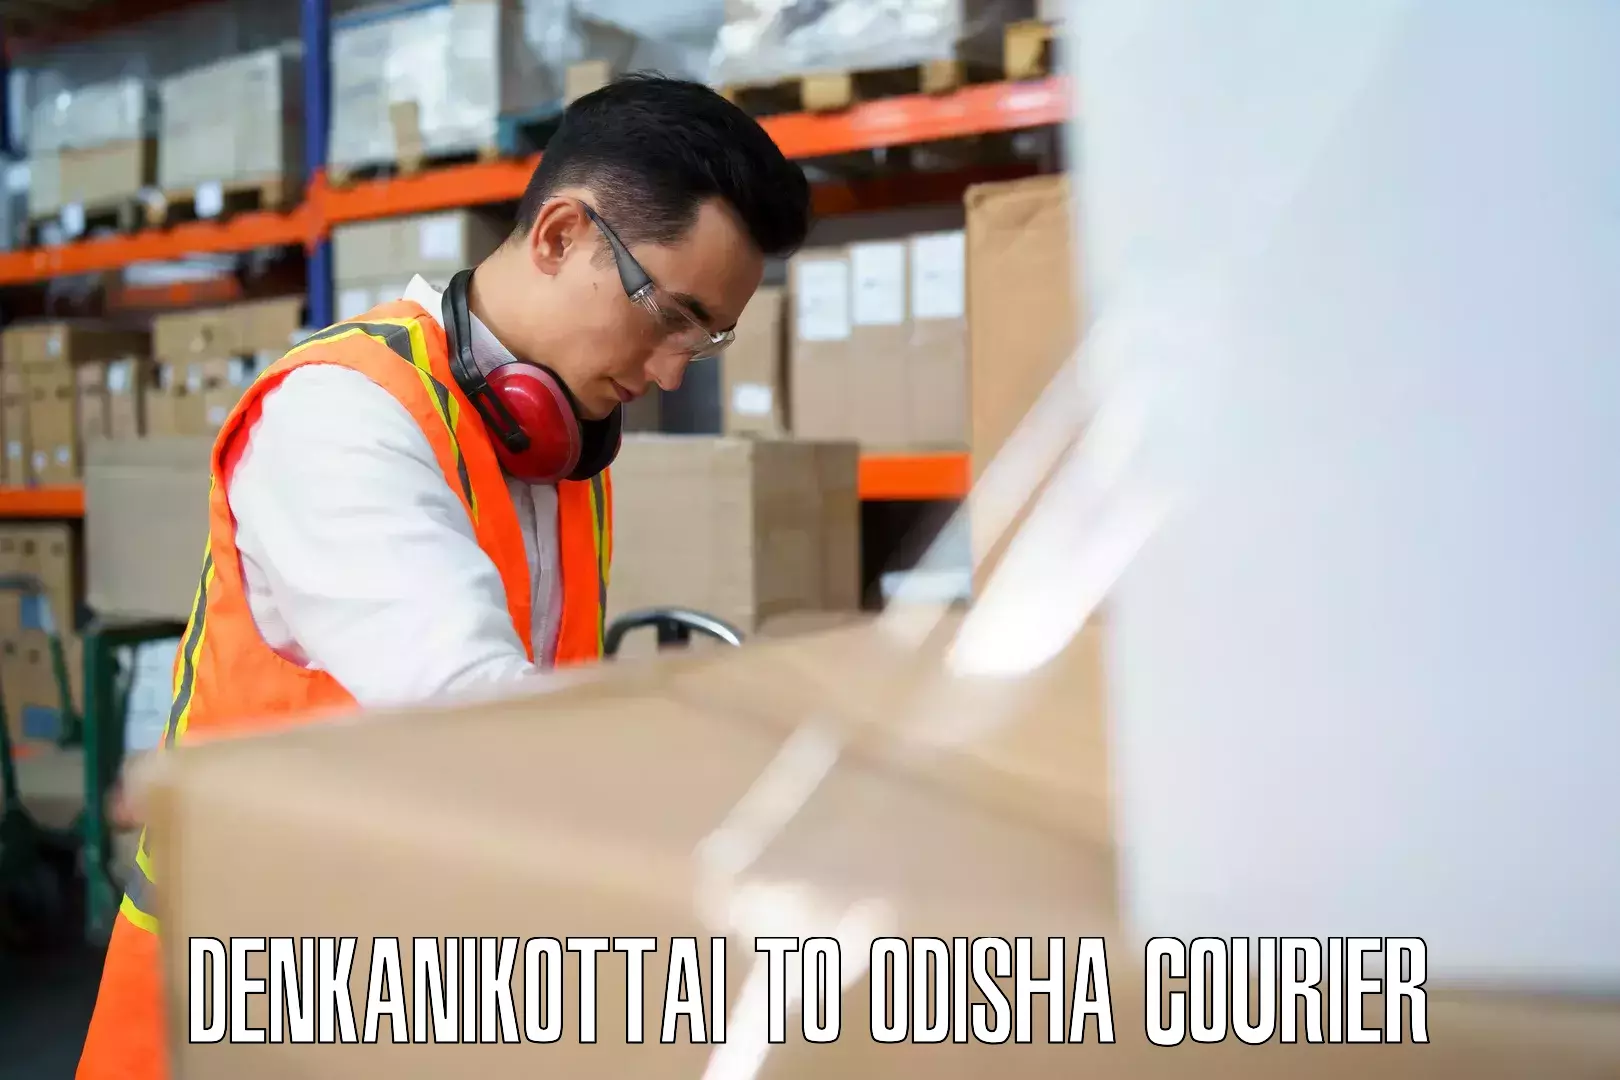 Luggage storage and delivery Denkanikottai to Karanjia